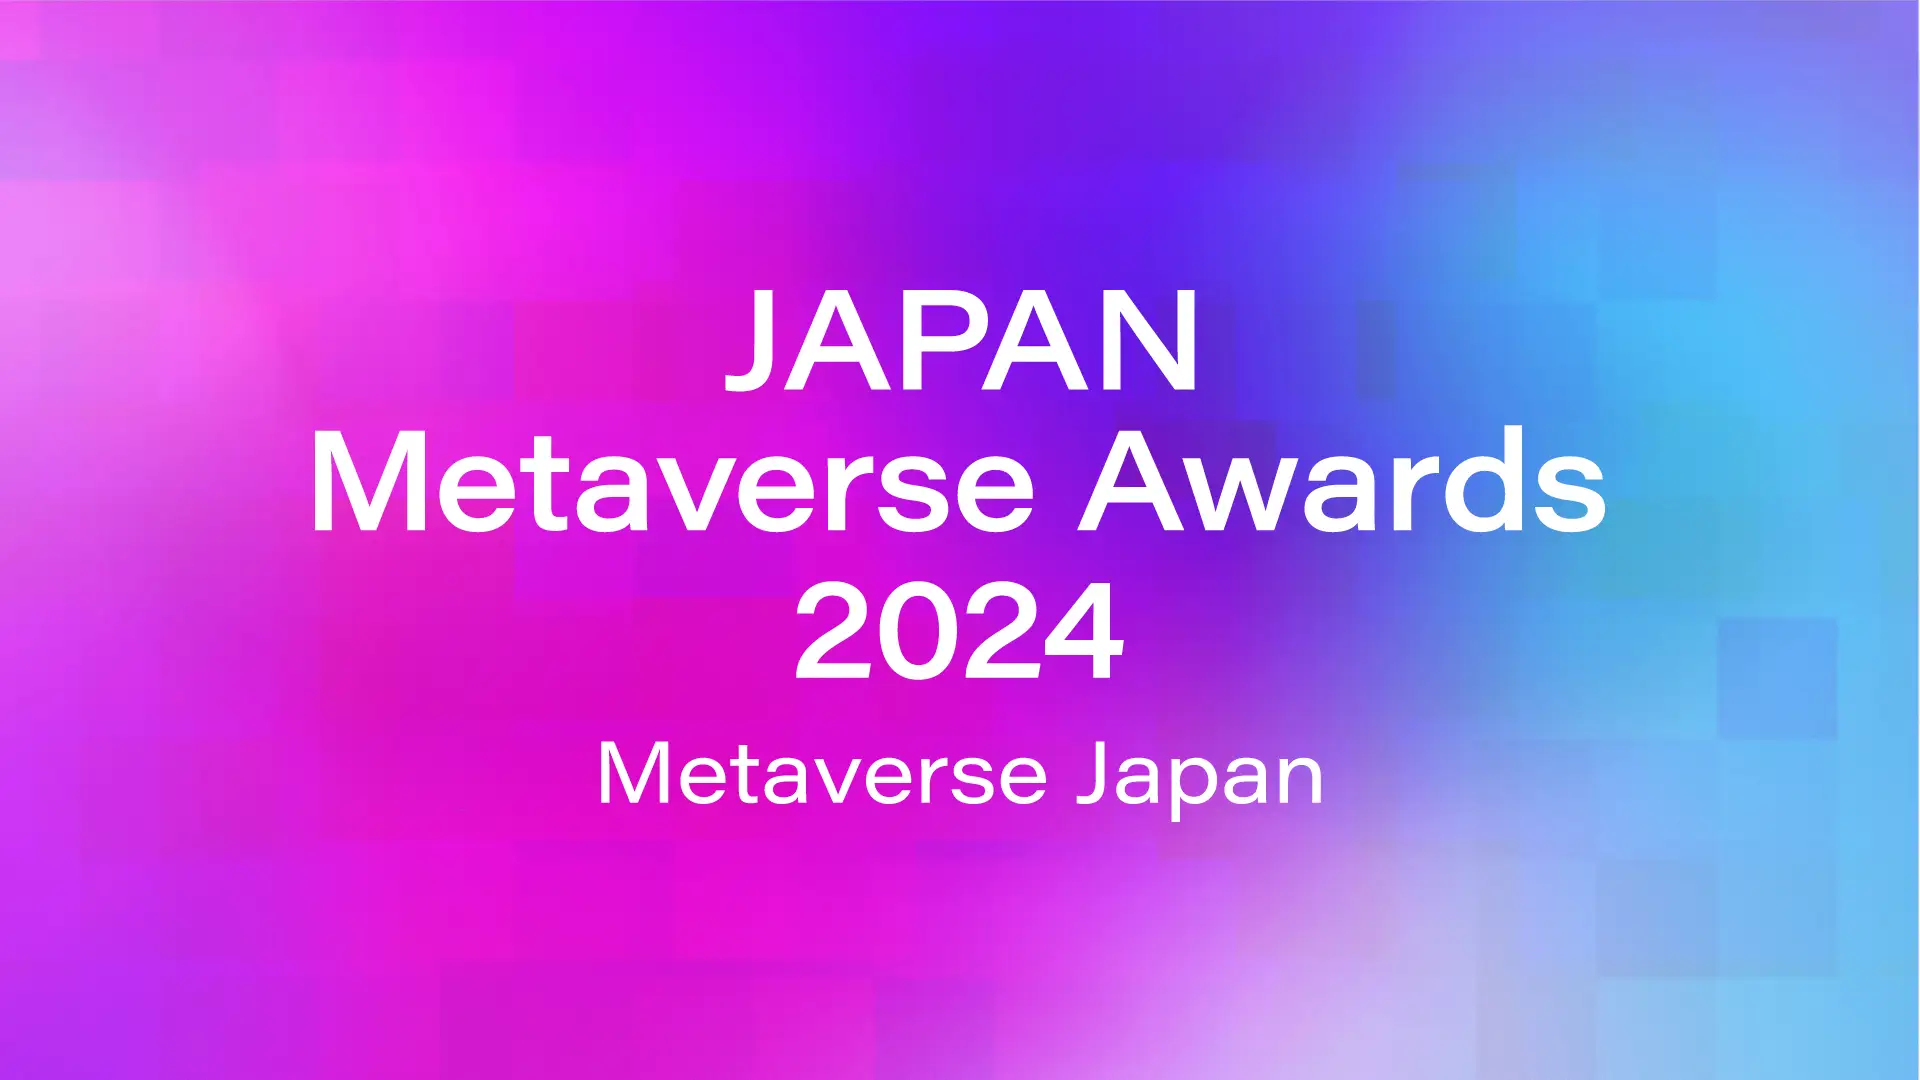 Japan Metaverse Awards 2024が初開催